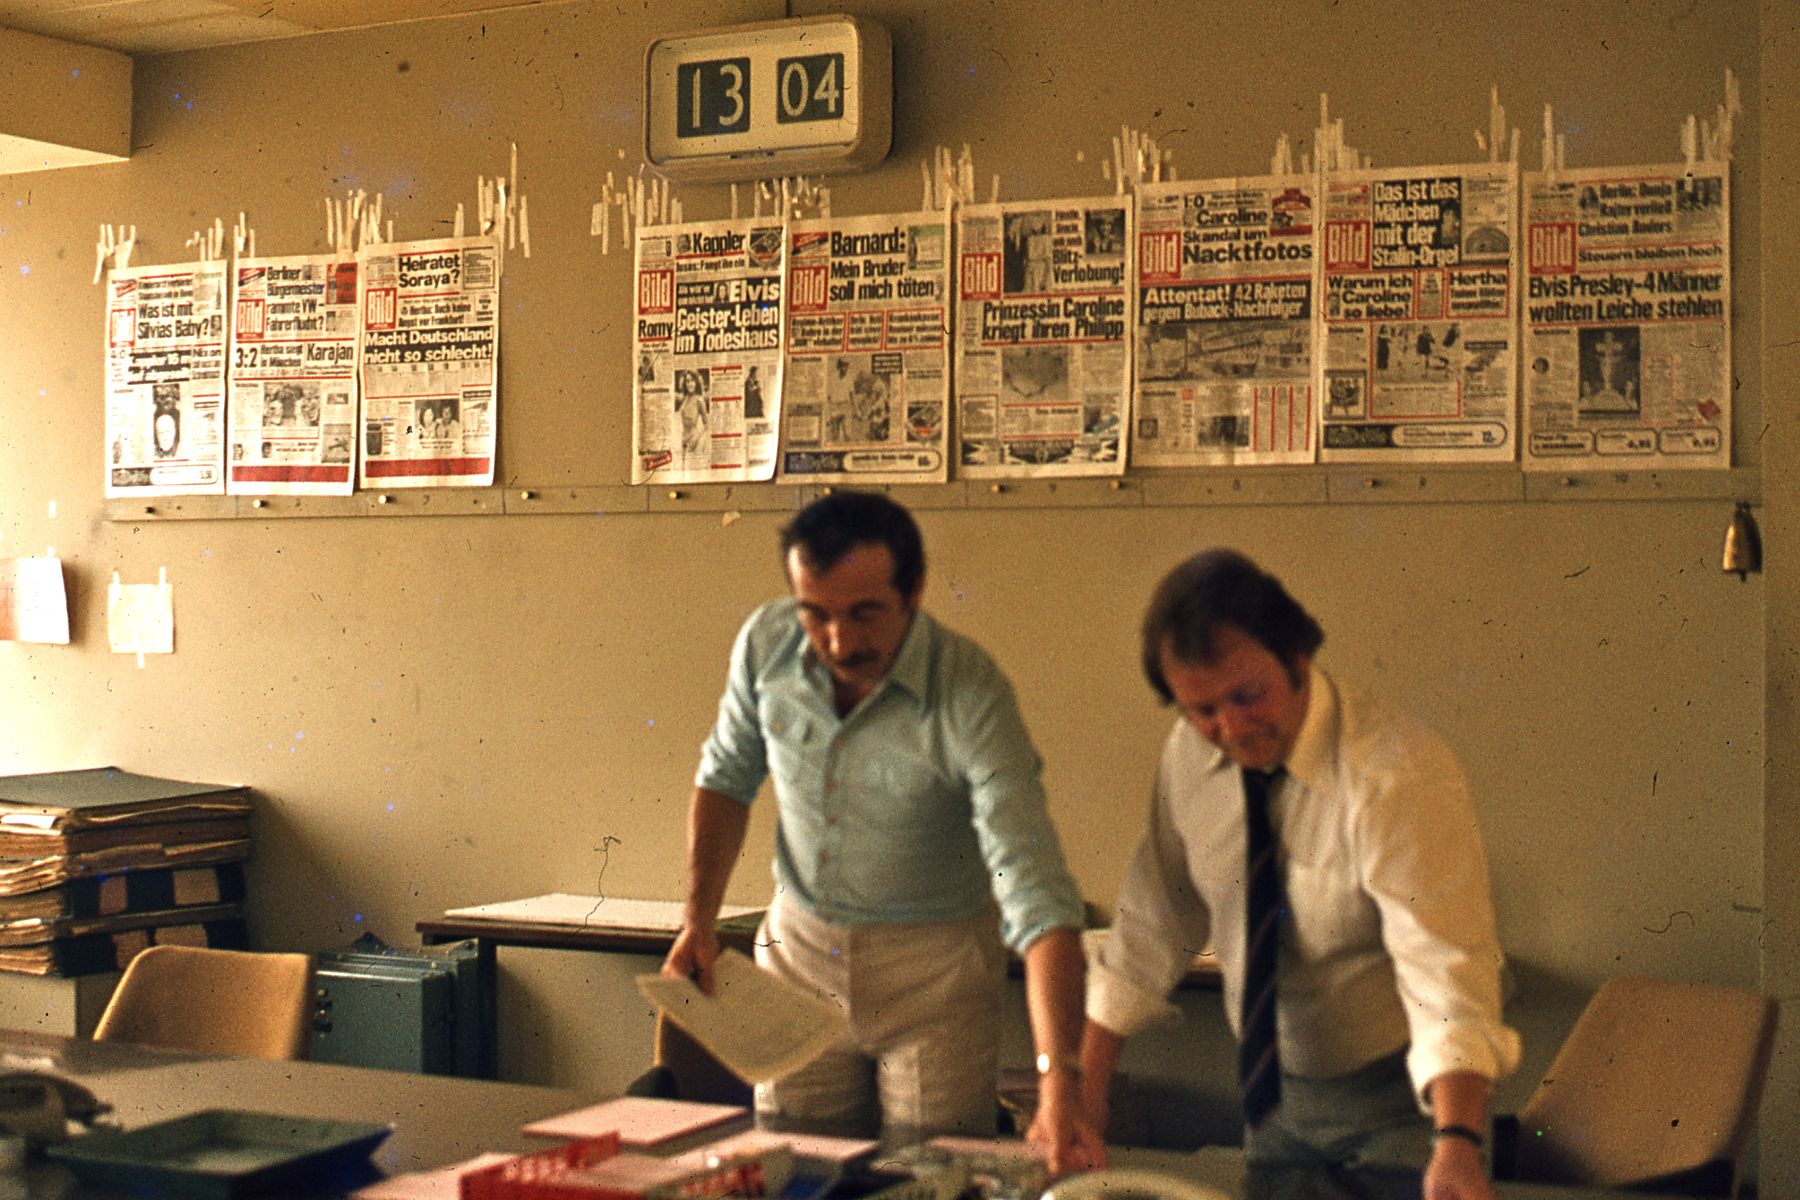 editorial_office_of_bild_newspaper2c_west_berlin2c_1977